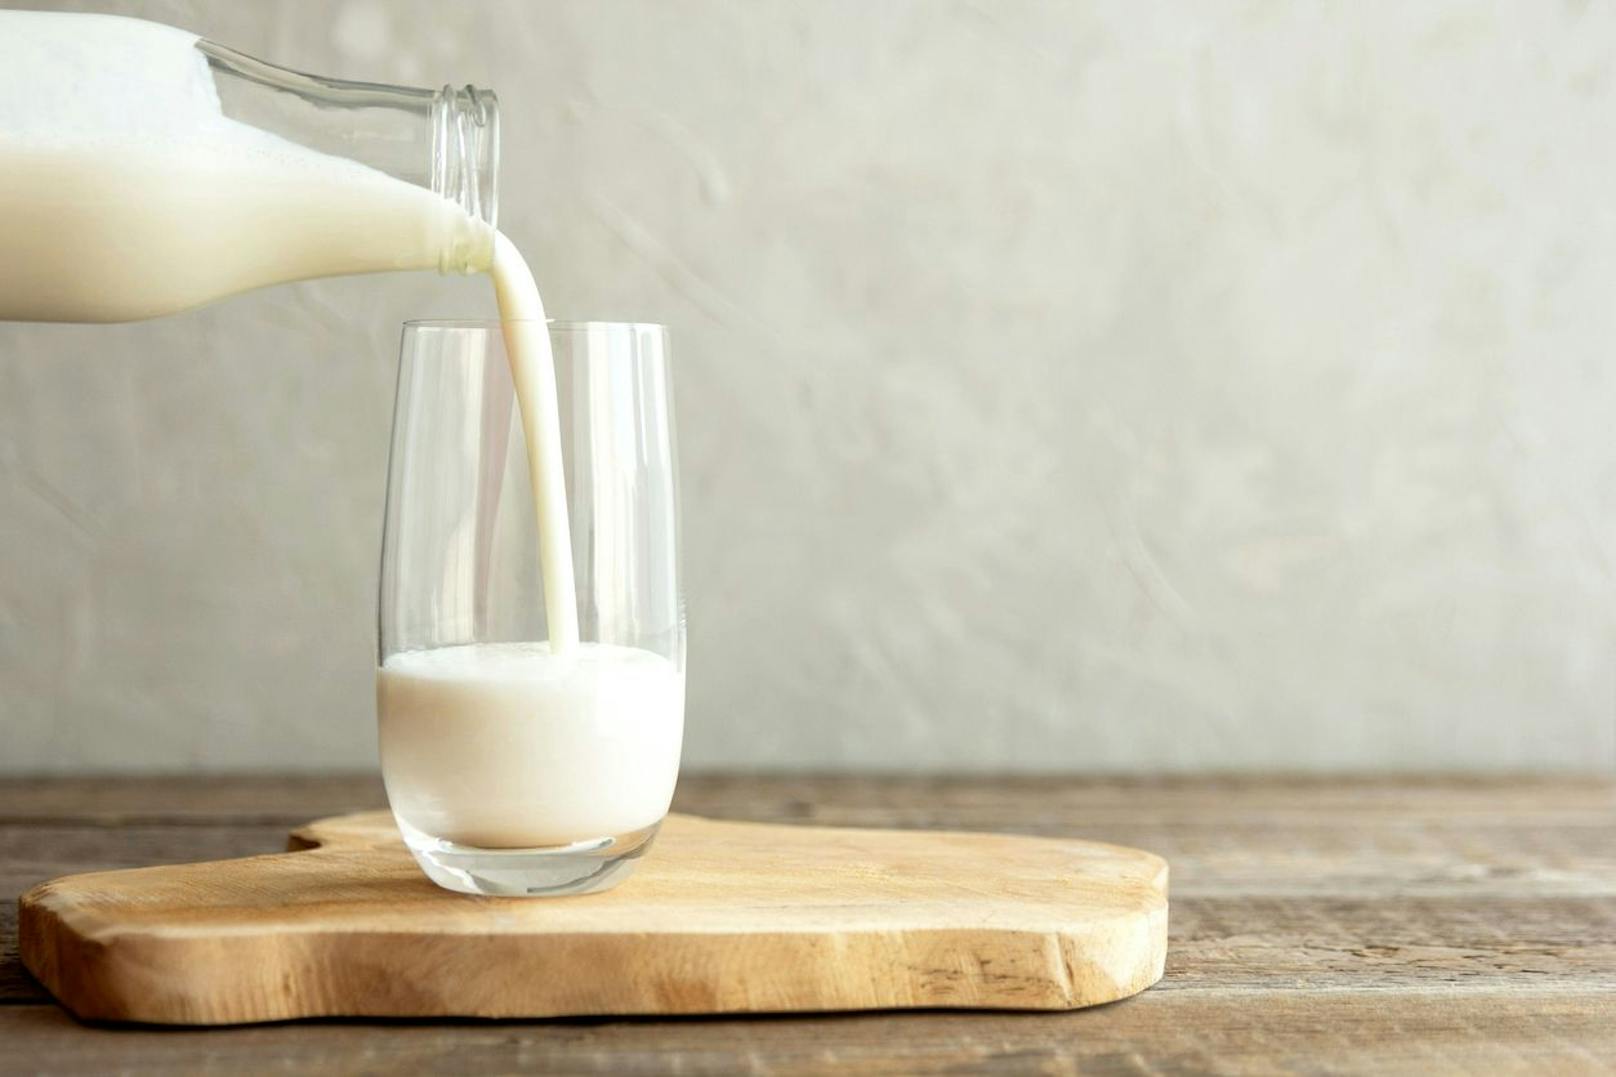 Achte darauf, dass du dich von Milchprodukten&nbsp; fernhältst. Das Getränk bläht deinen Bauch nur noch mehr auf und trägt dazu bei, dass du Lust auf mehr Süßes hast.&nbsp;